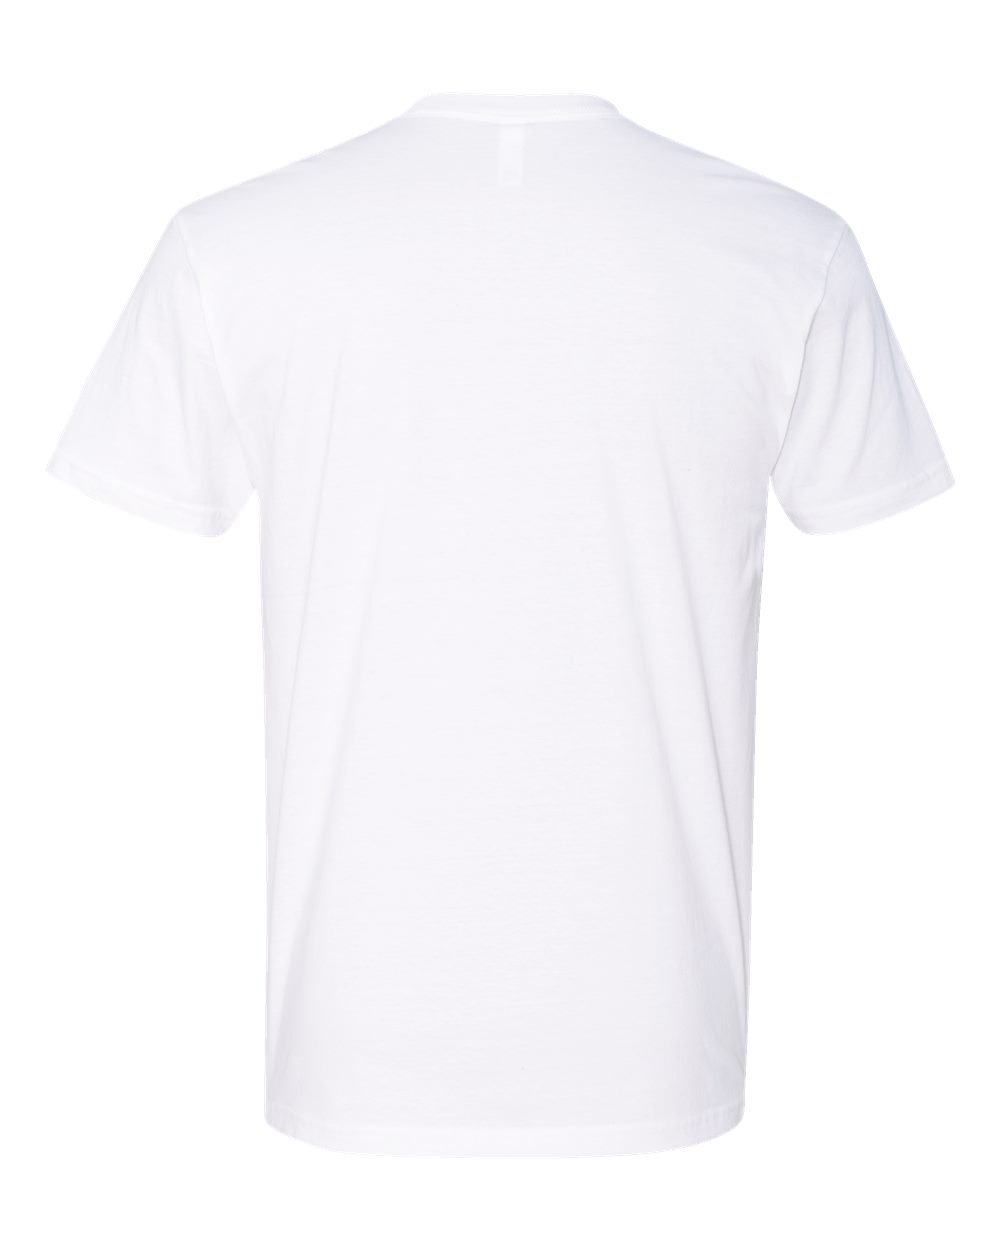 Detroit Spartans White Unisex T Shirt Back